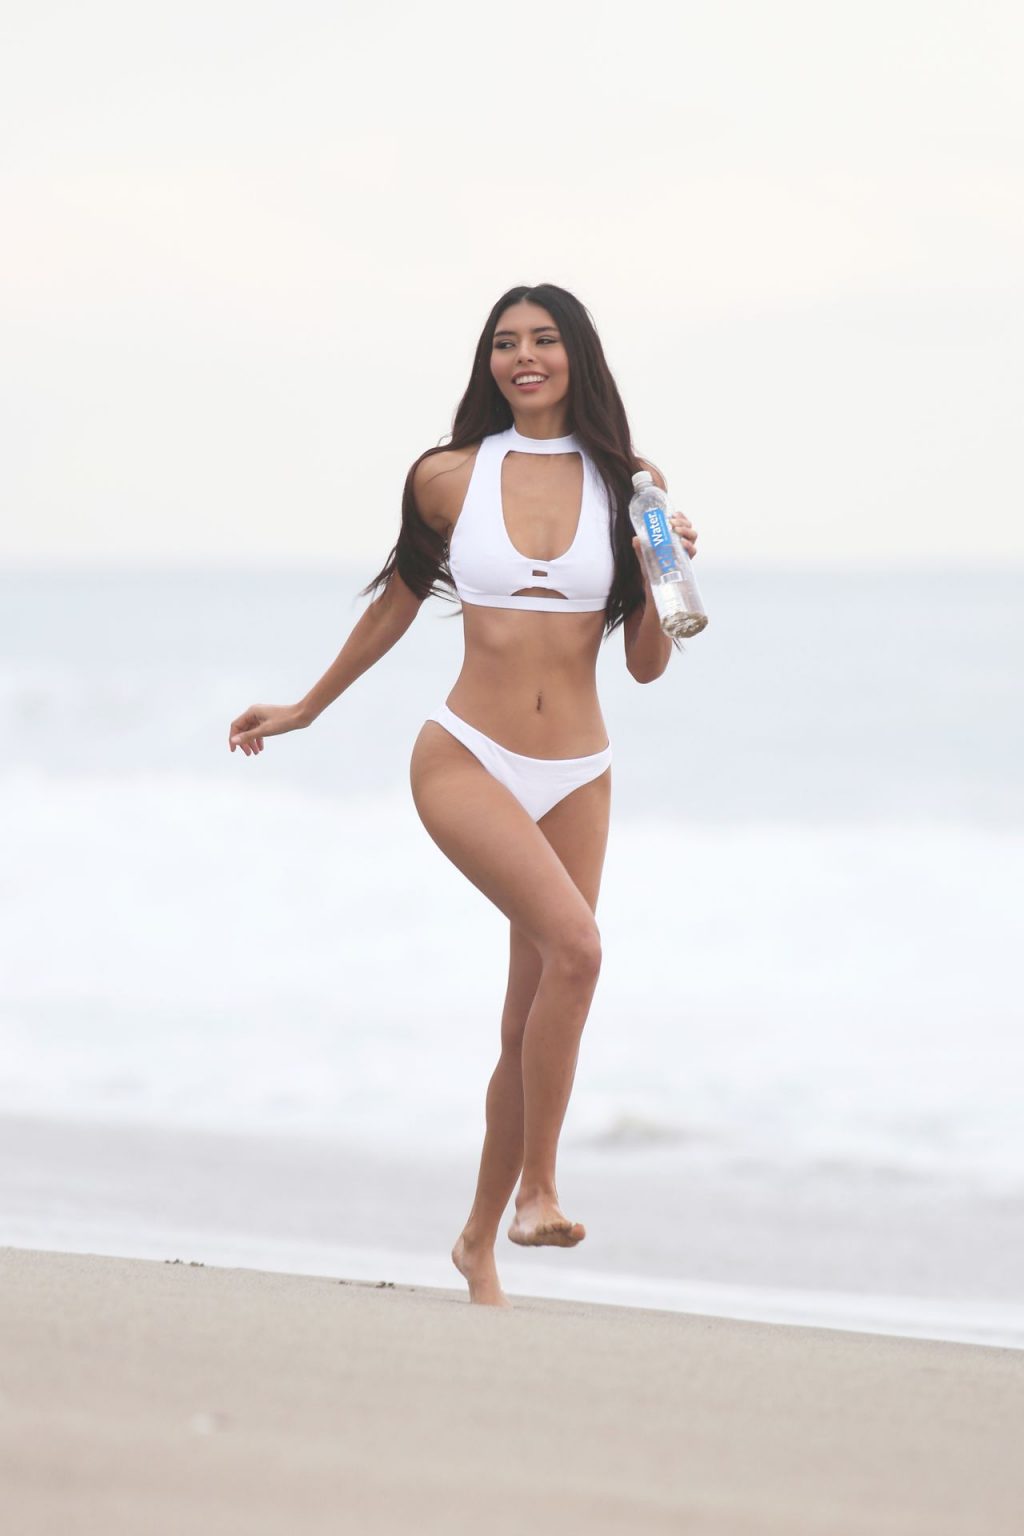 Nicole Esparza Shows Her Sexy Bikini Body in a New Photoshoot (46 Photos)